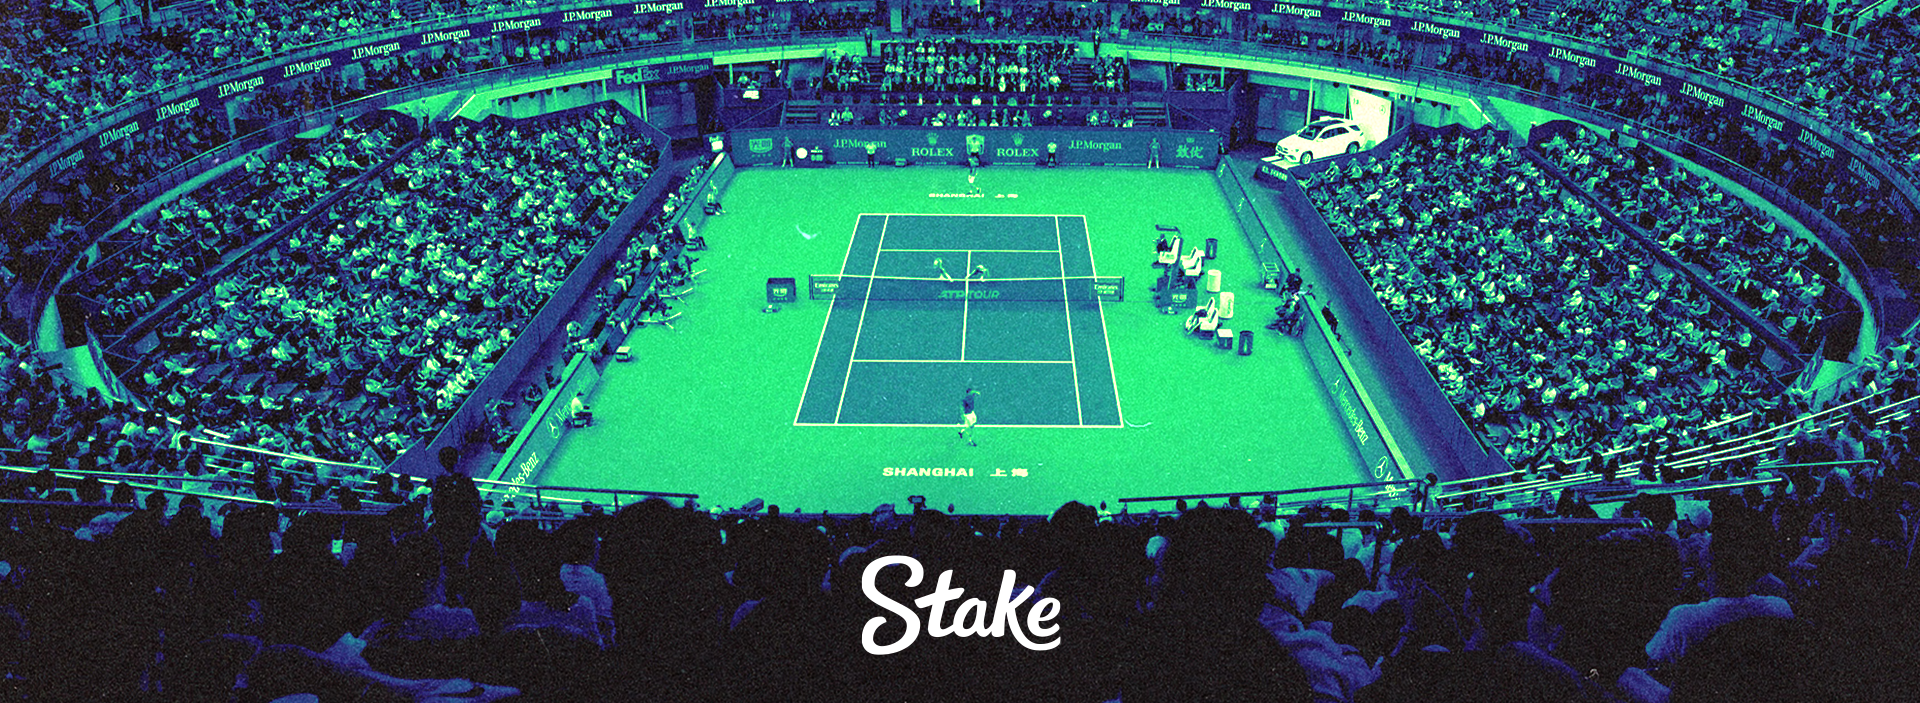 Melhores Torneios de Tênis ATP Outubro – apostar na Stake